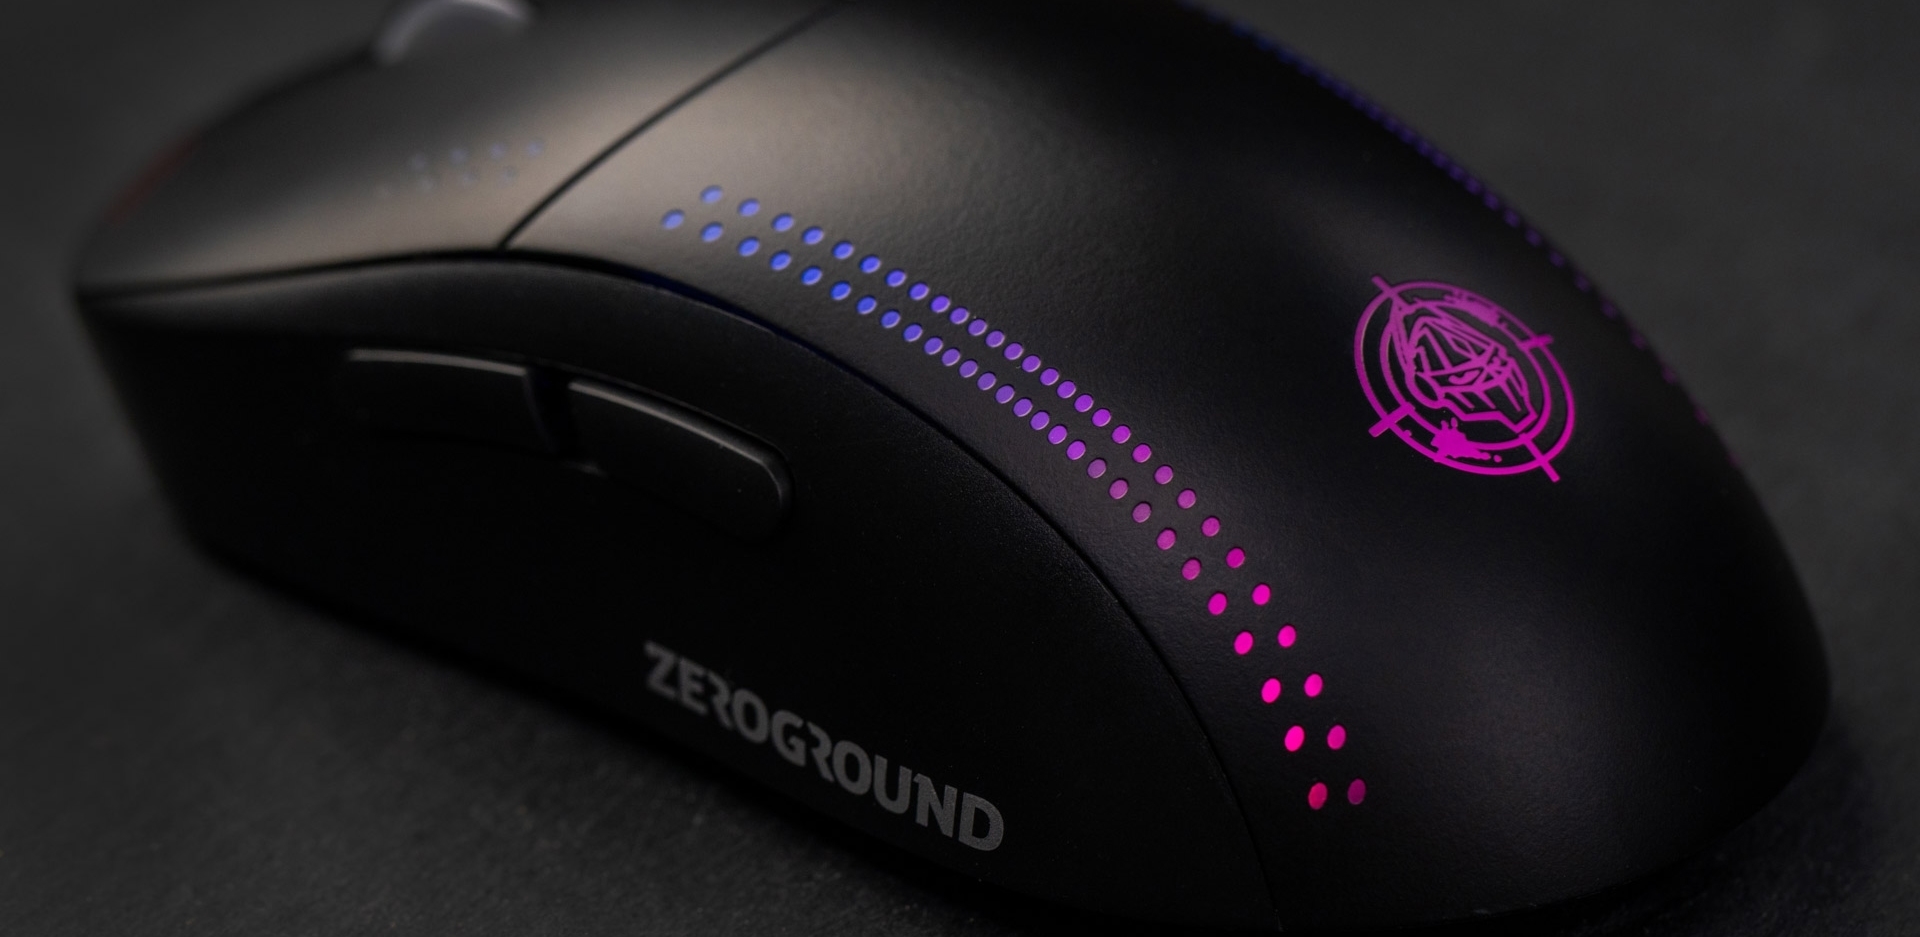 ZeroGround Kimura 3.0 Black - Gaming mouse